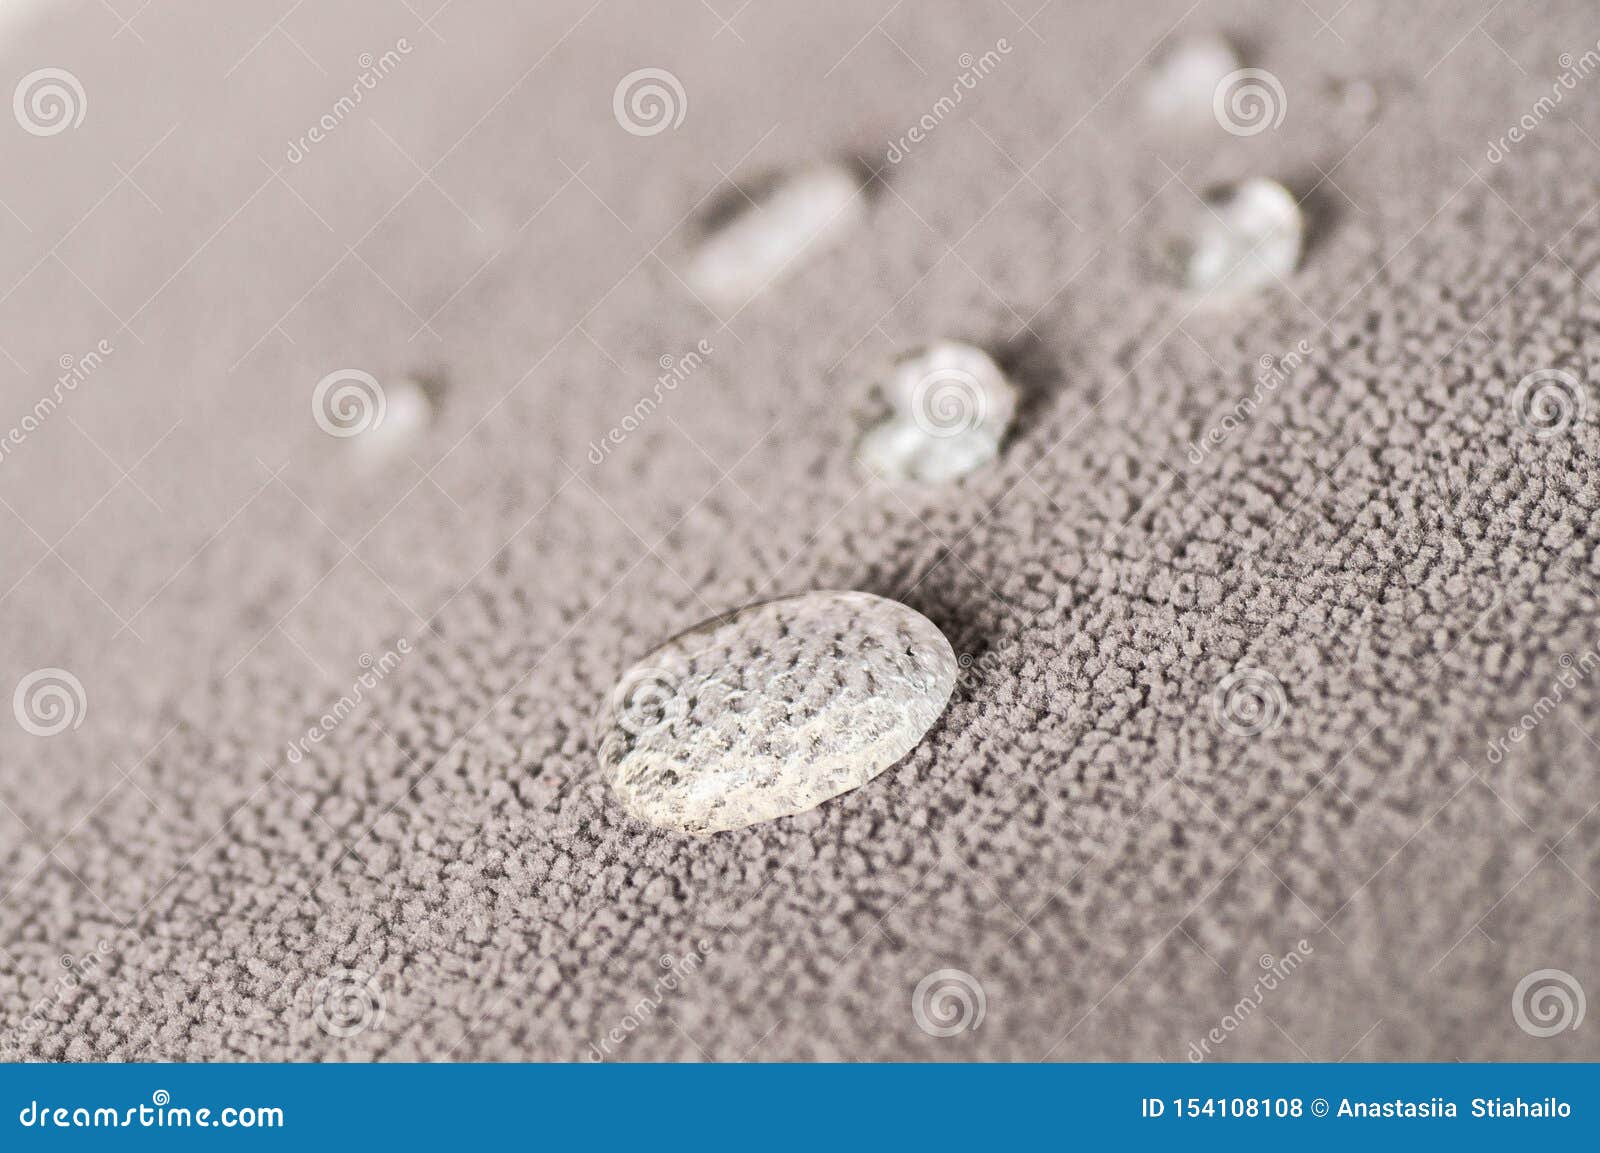 Impermeabilización textile, repelencia al agua, Waterproof